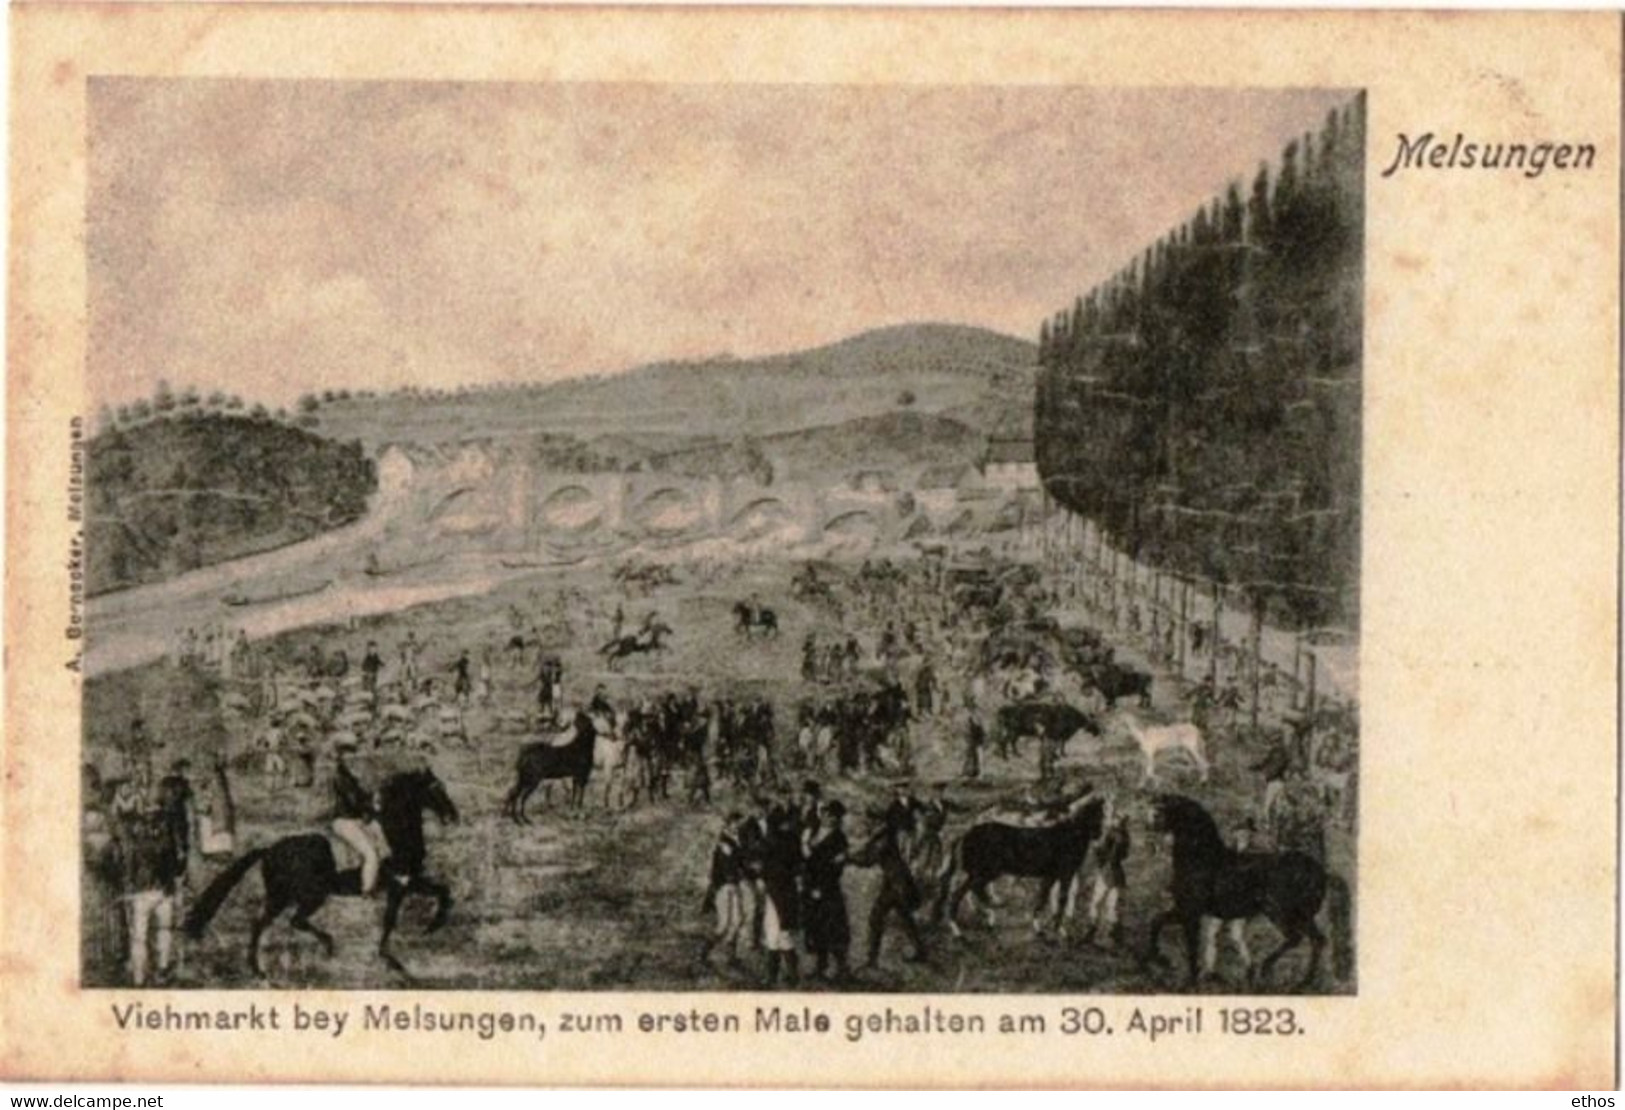 Viehmarkt Bey Melsungen, Zum Ersten Male Gehalten Am 30.April 1823 ...Excellent état - Melsungen